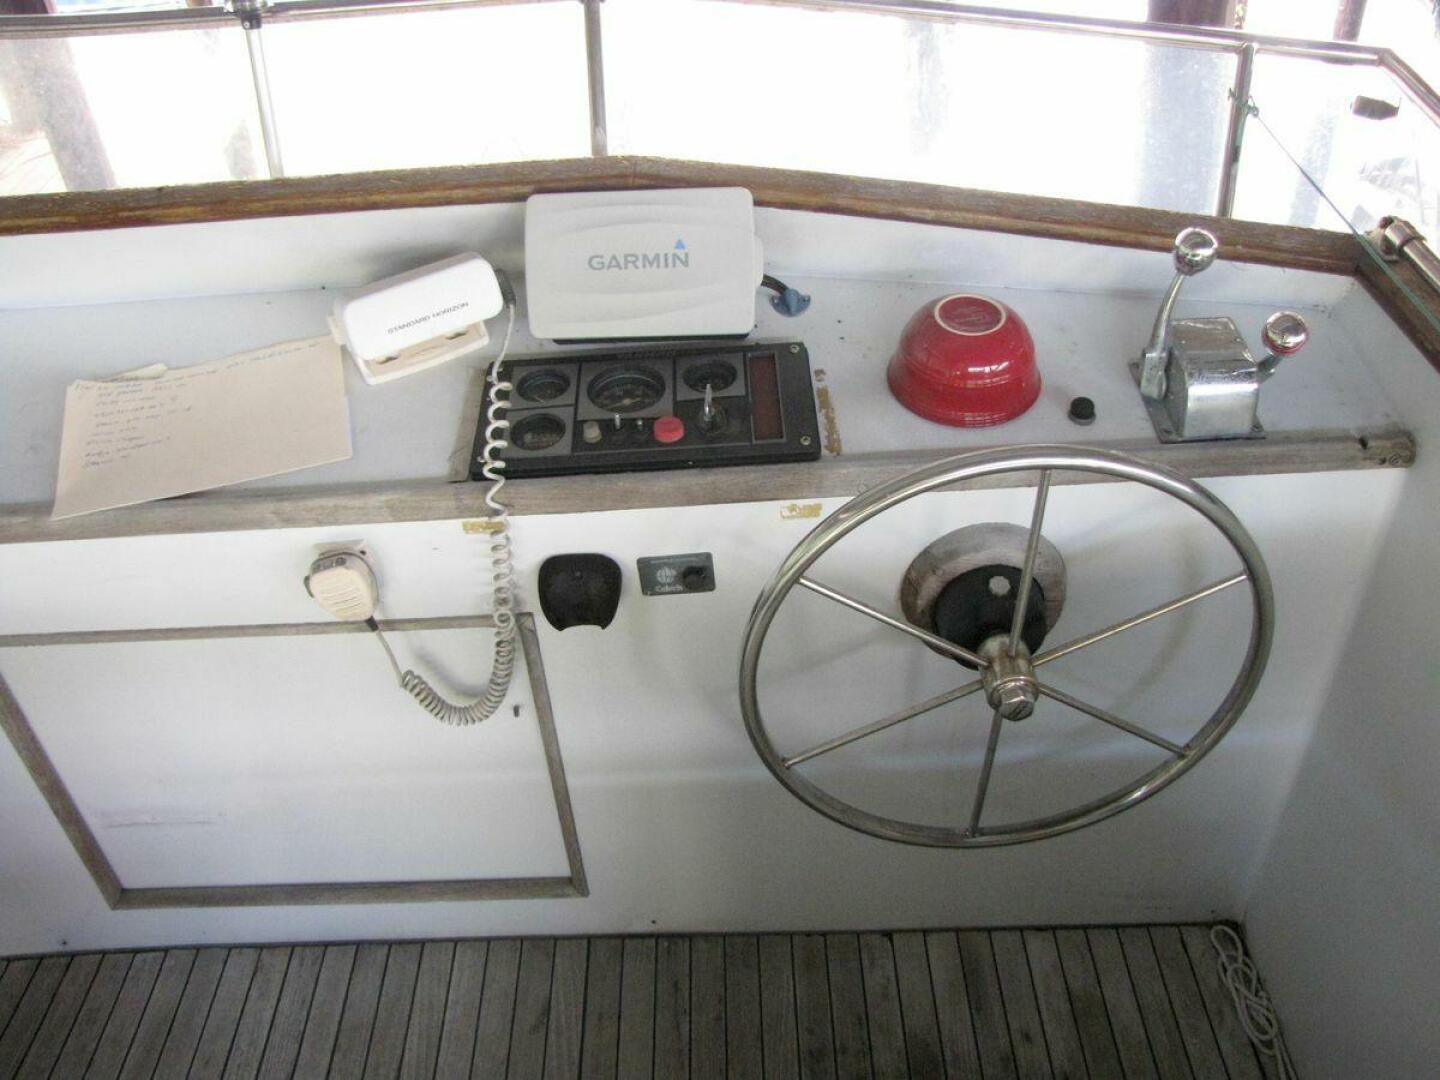 1983 34' Wilbur 34 Downeast Trawler